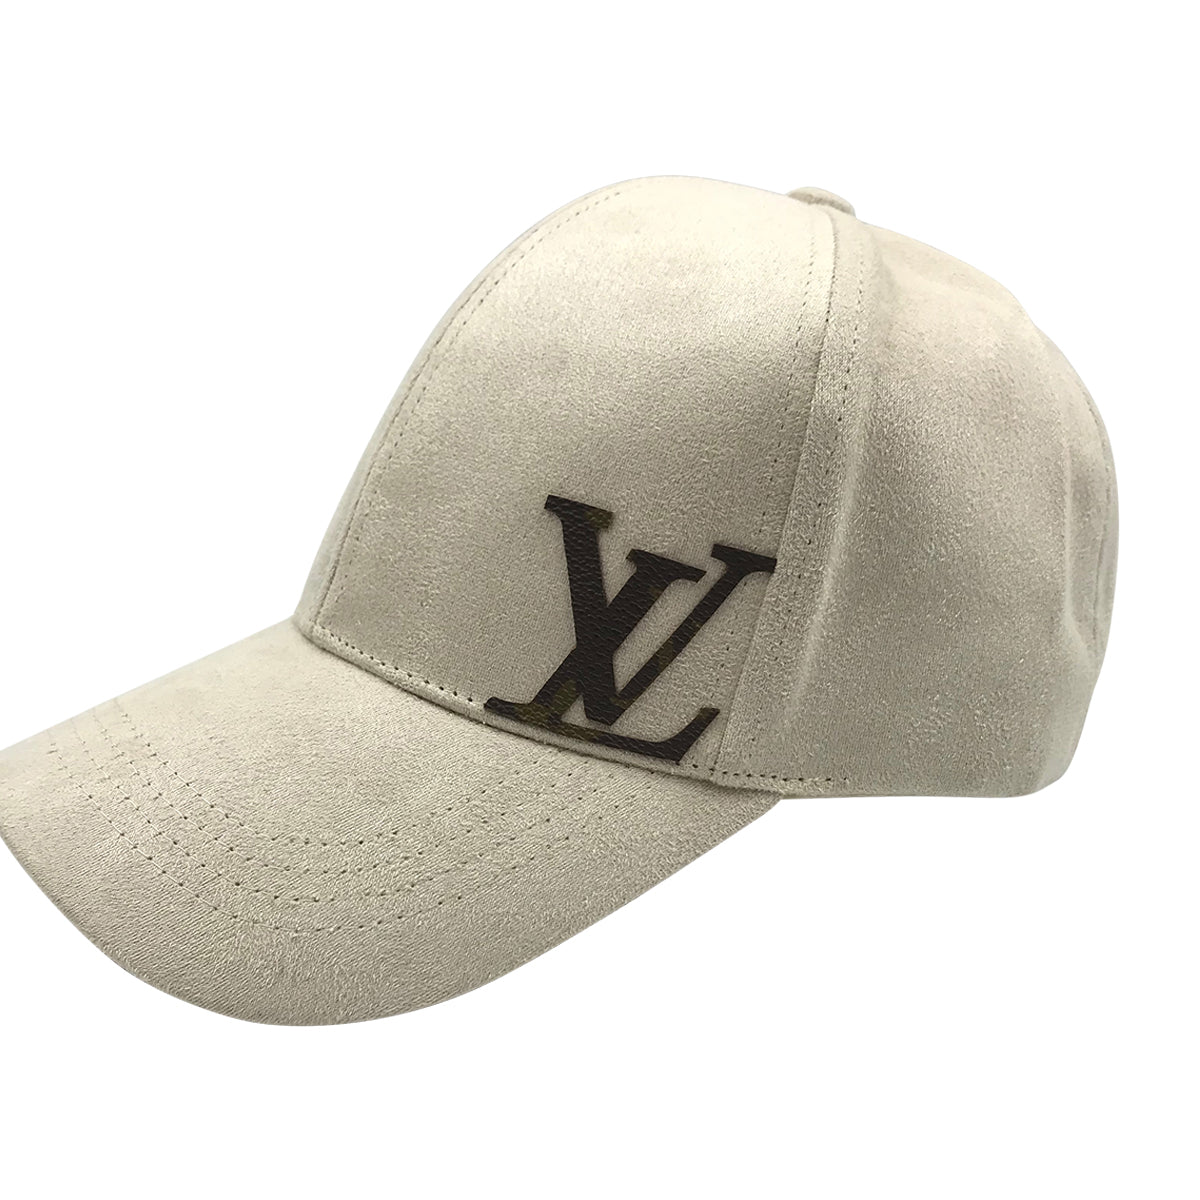 Baseball Cap: LV Repurposed